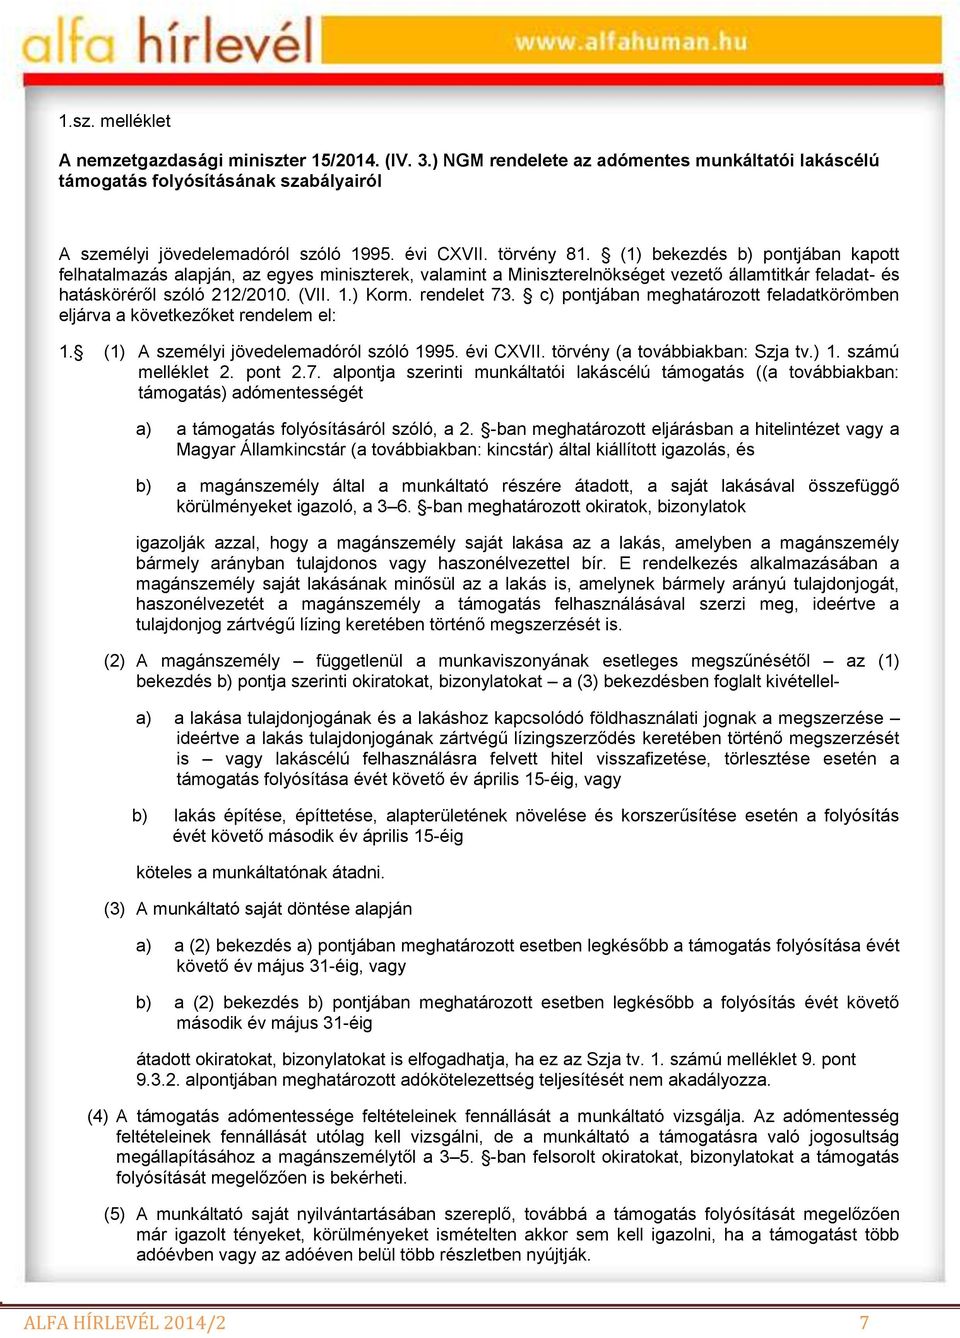 rendelet 73. c) pontjában meghatározott feladatkörömben eljárva a következőket rendelem el: 1. (1) A személyi jövedelemadóról szóló 1995. évi CXVII. törvény (a továbbiakban: Szja tv.) 1.